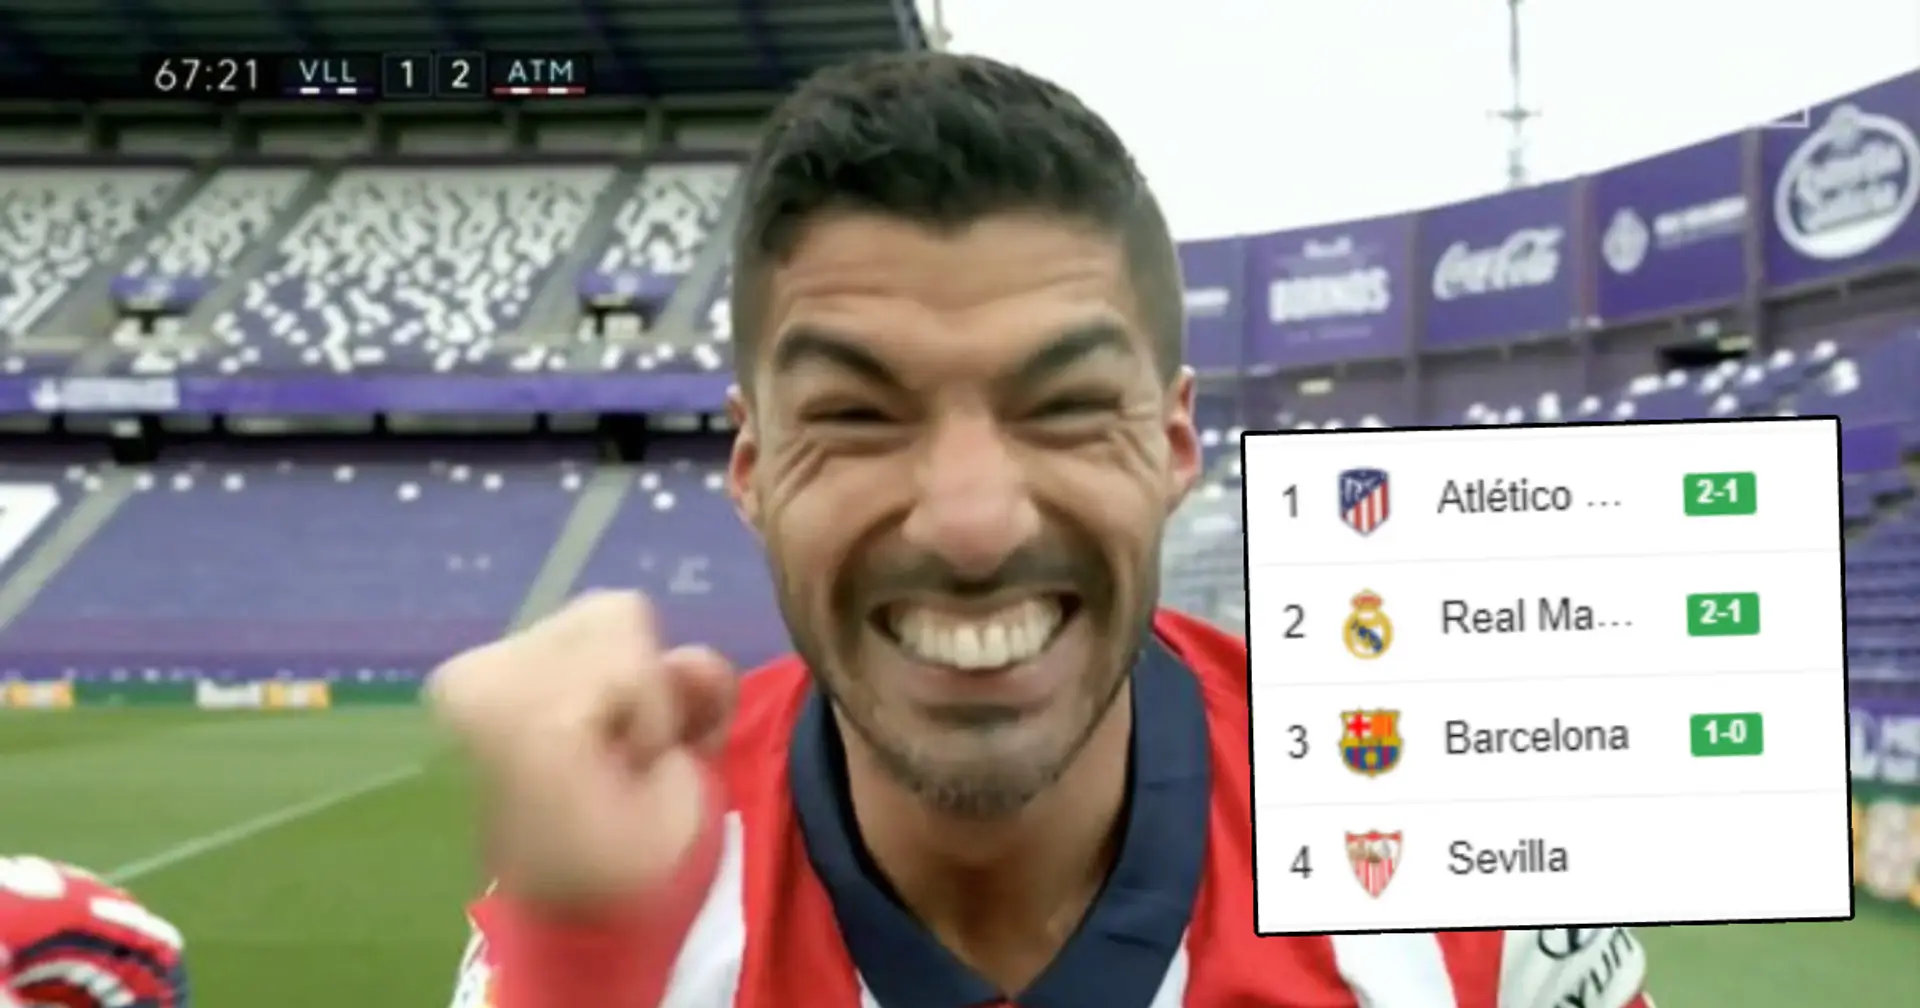 Atletico win La Liga, Suarez scores and becomes MotM in decisive win